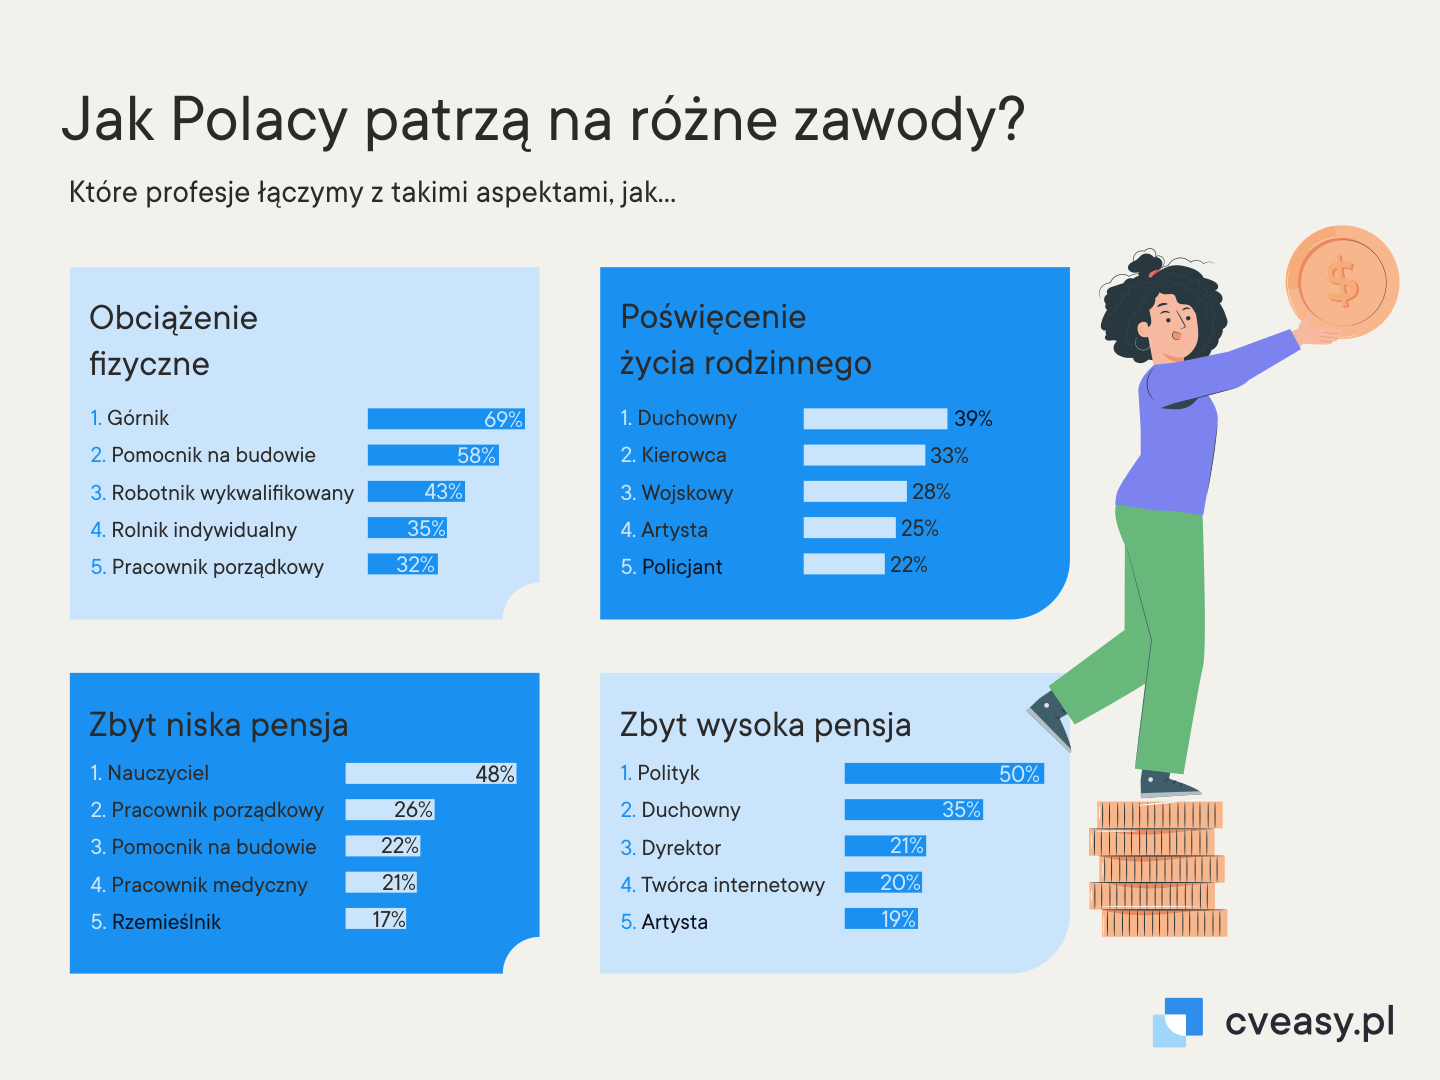 Jak Polacy patrza na różine zawody?